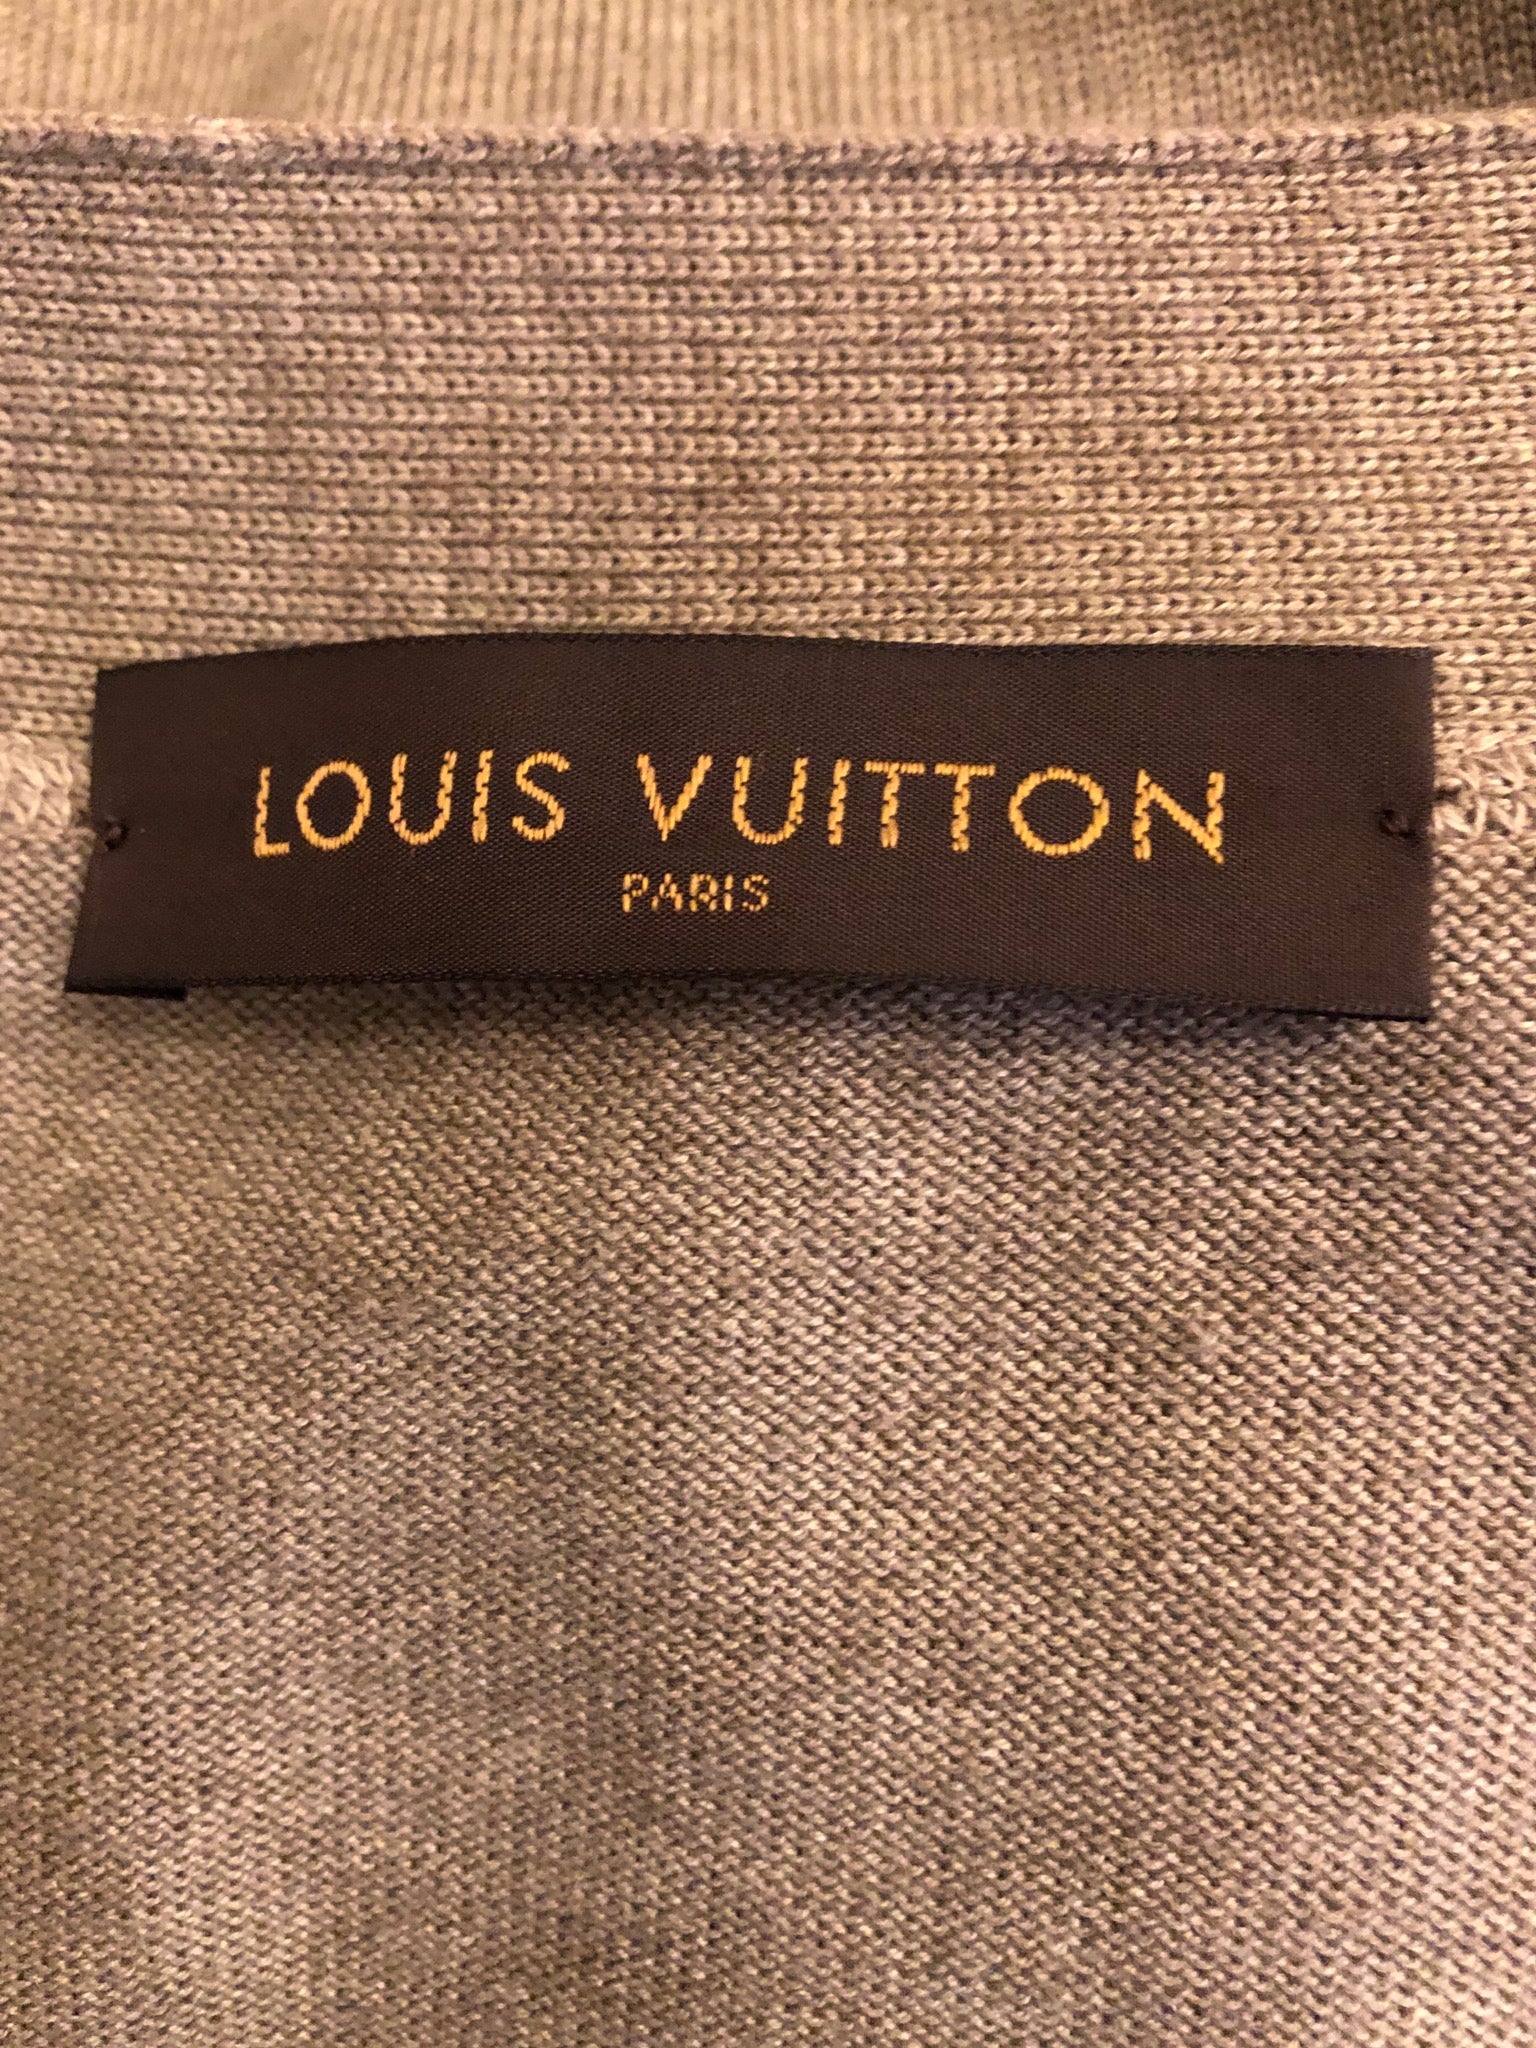 Sweatshirt Louis Vuitton Grey size M International in Cotton  32464034